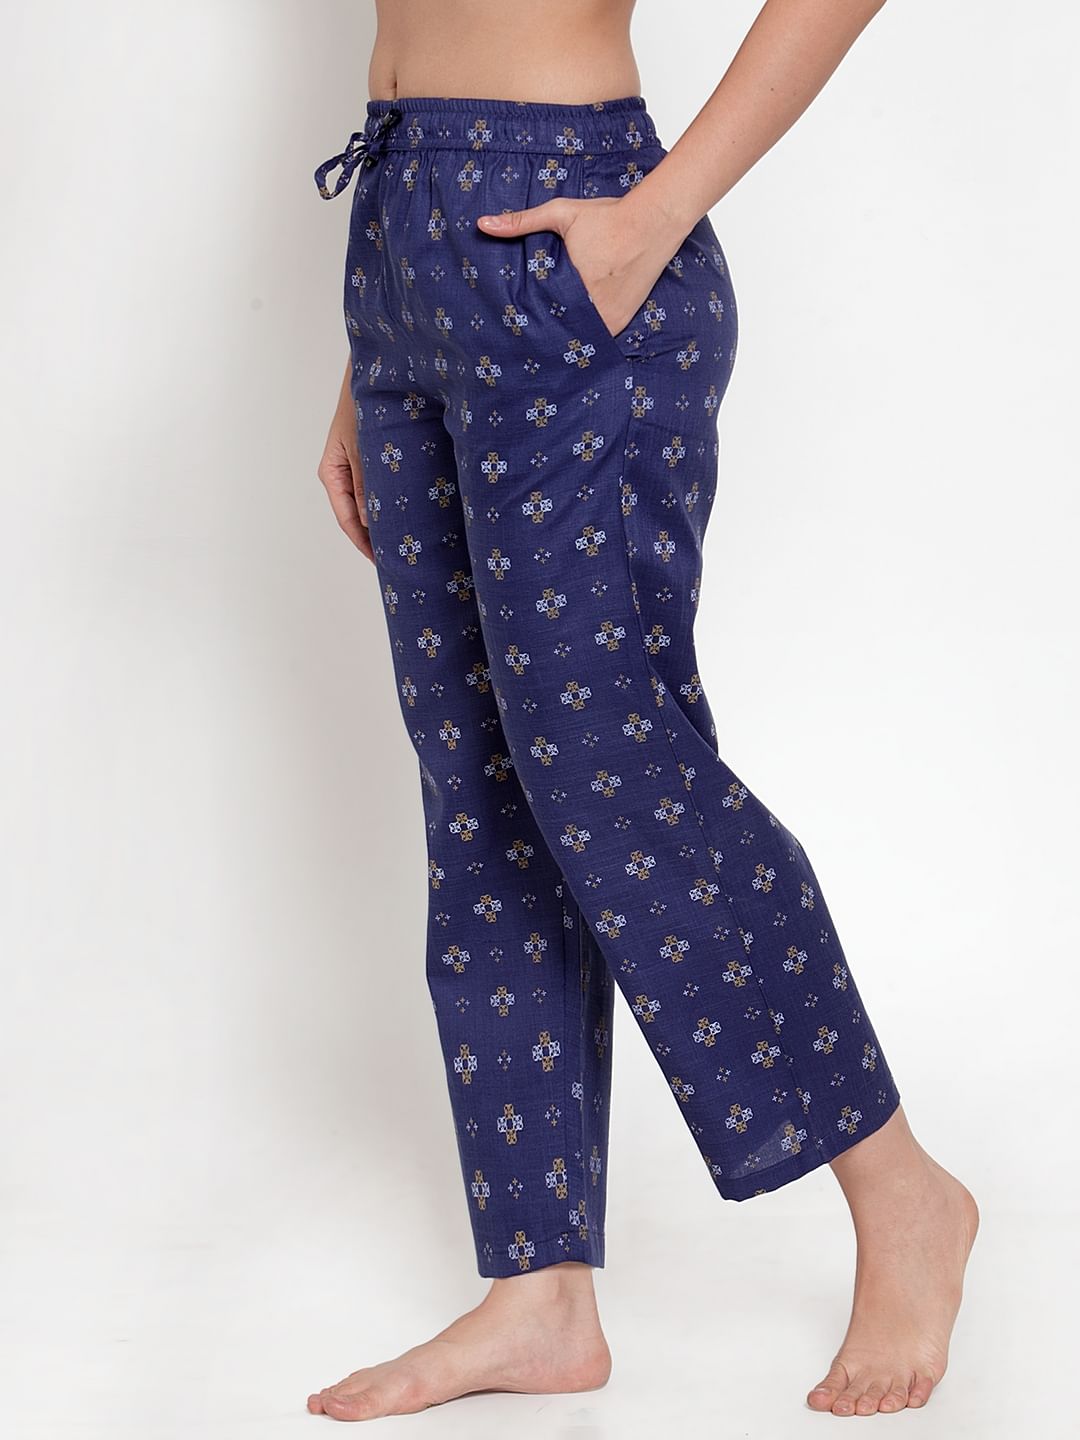 Navy Blue Cotton Printed Pyjama